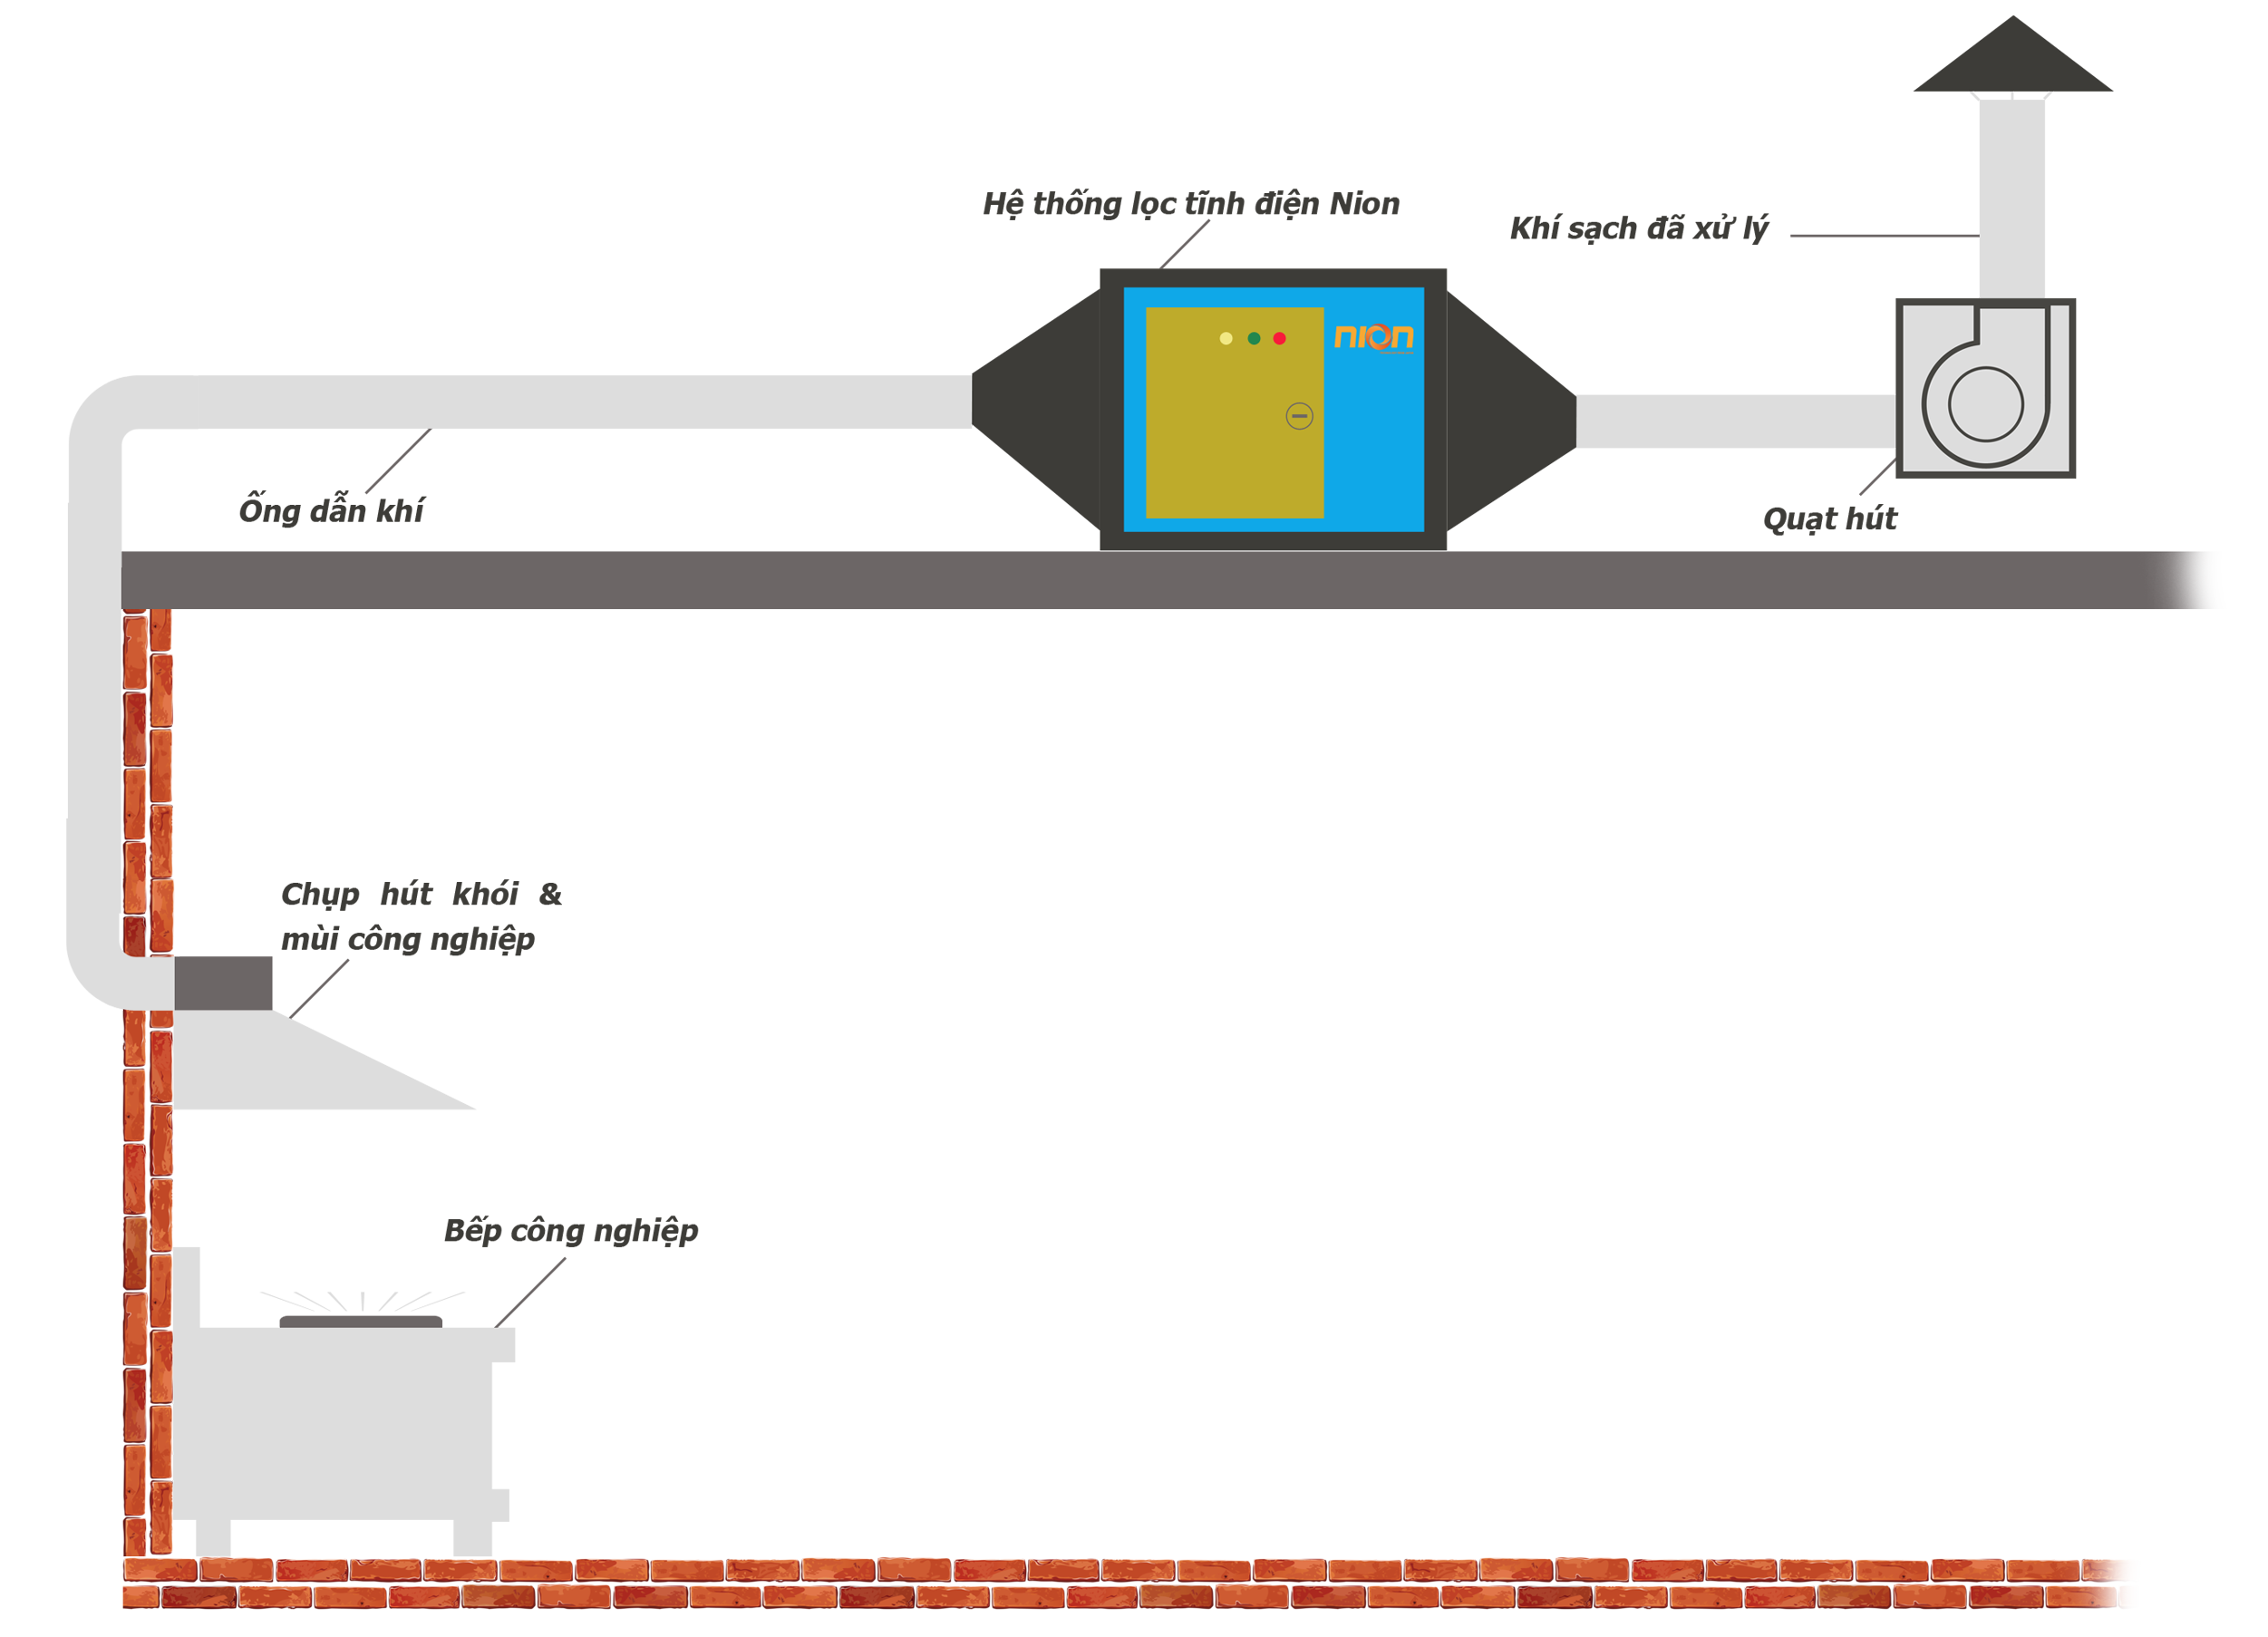 Hình 6 : Mô hình lắp đặt máy lọc tĩnh điện xử lý khói nhà hàng trên trần nhà